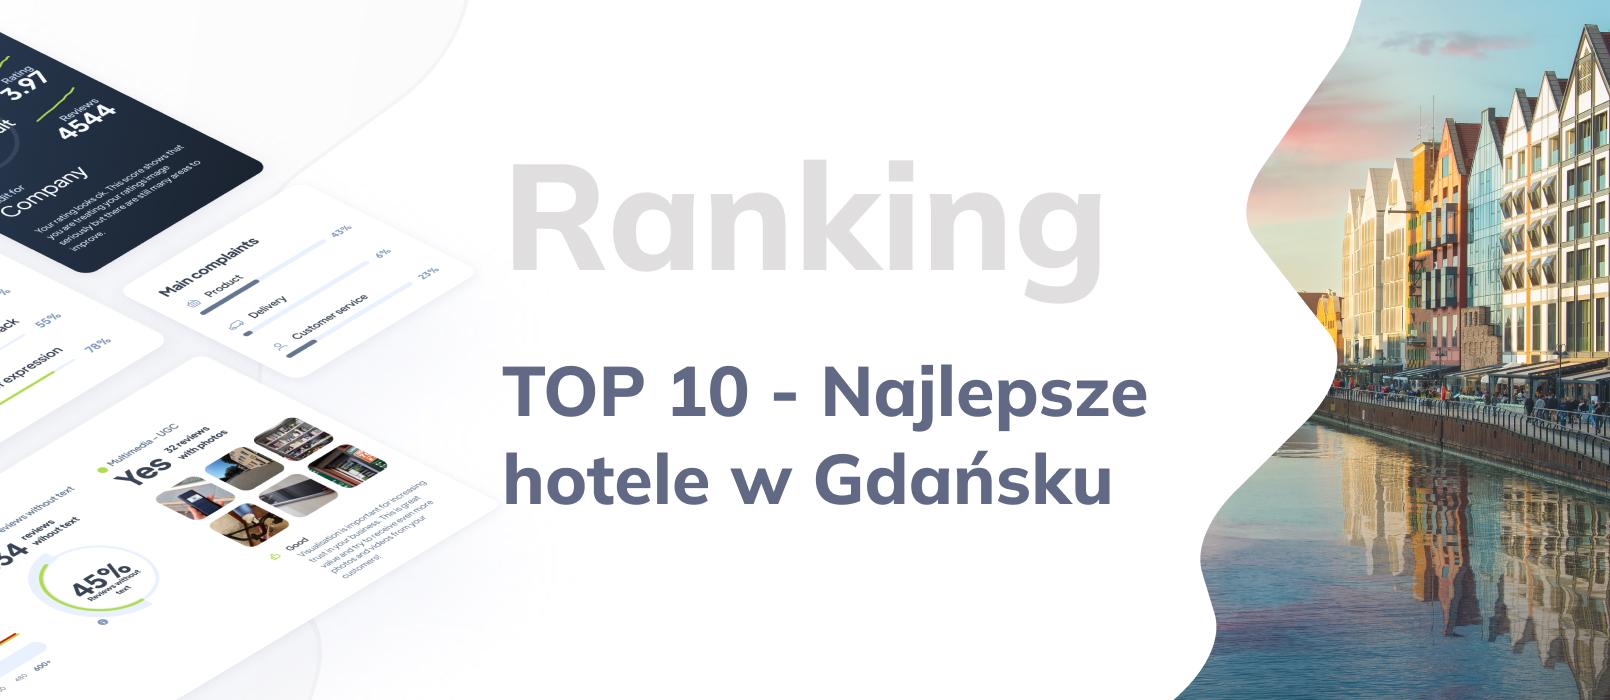 TOP 10: Najlepsze hotele w Gdańsku - ranking najlepszych hoteli w Gdańsku